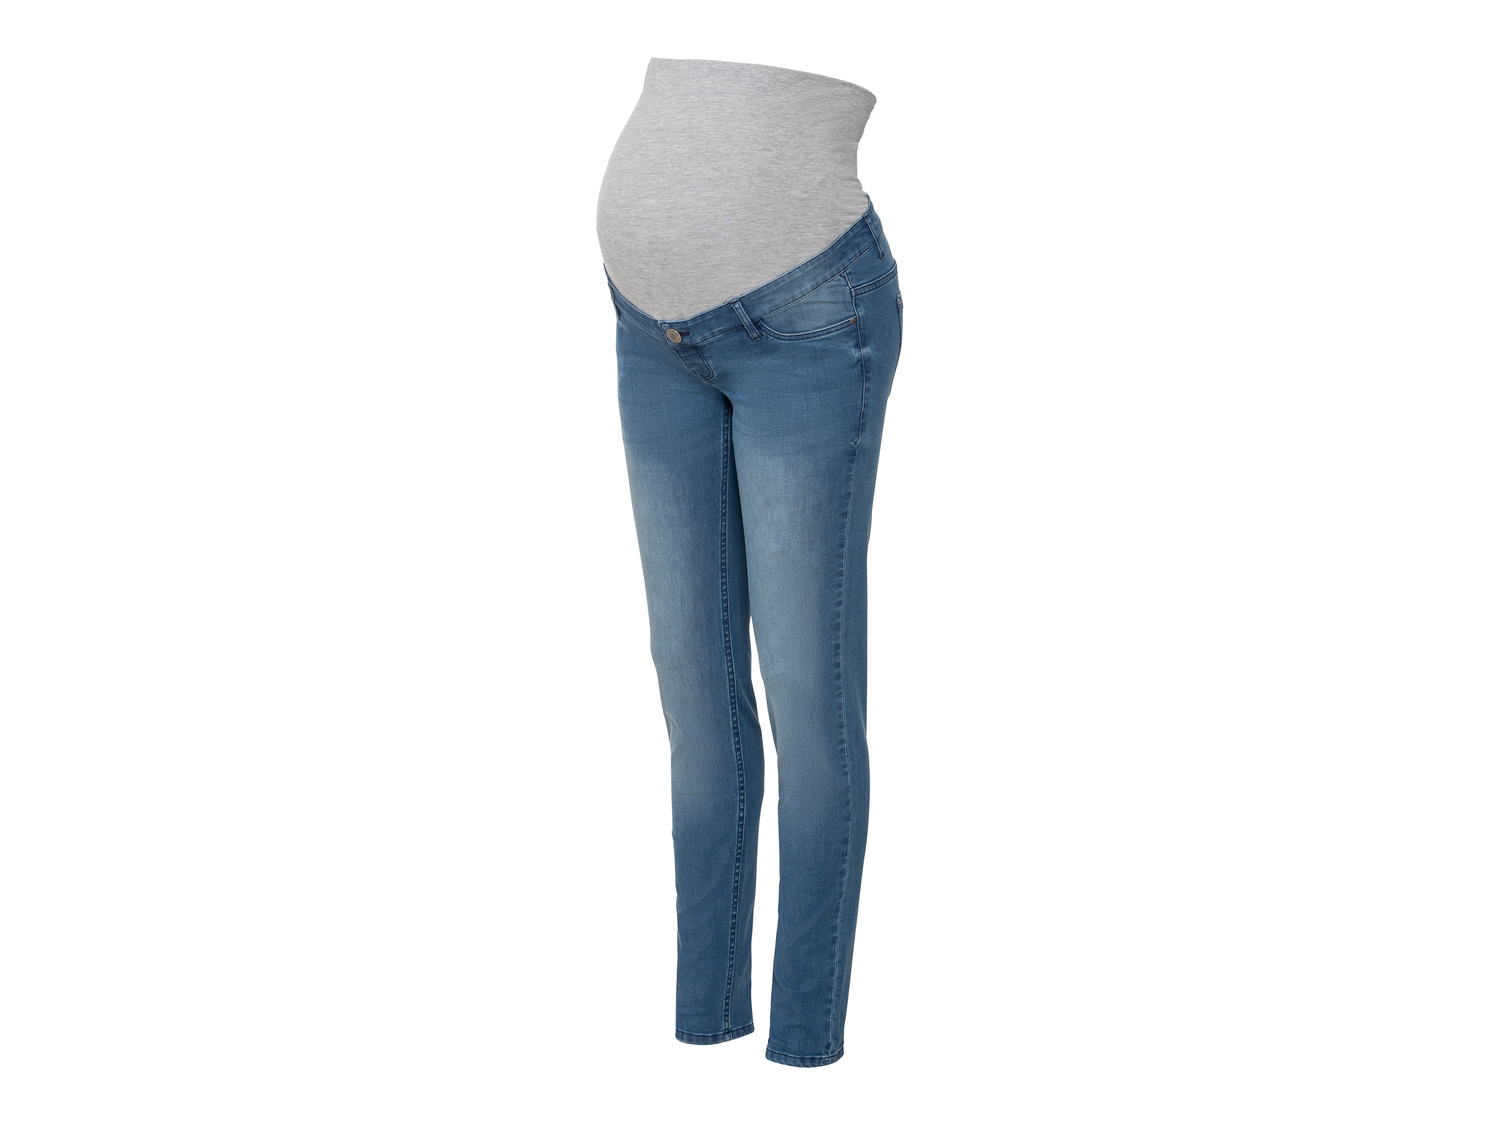 Jeans premaman Super Skinny Fit Esmara, prezzo 1.00 &#8364; 
Misure: 38-48 
- ...